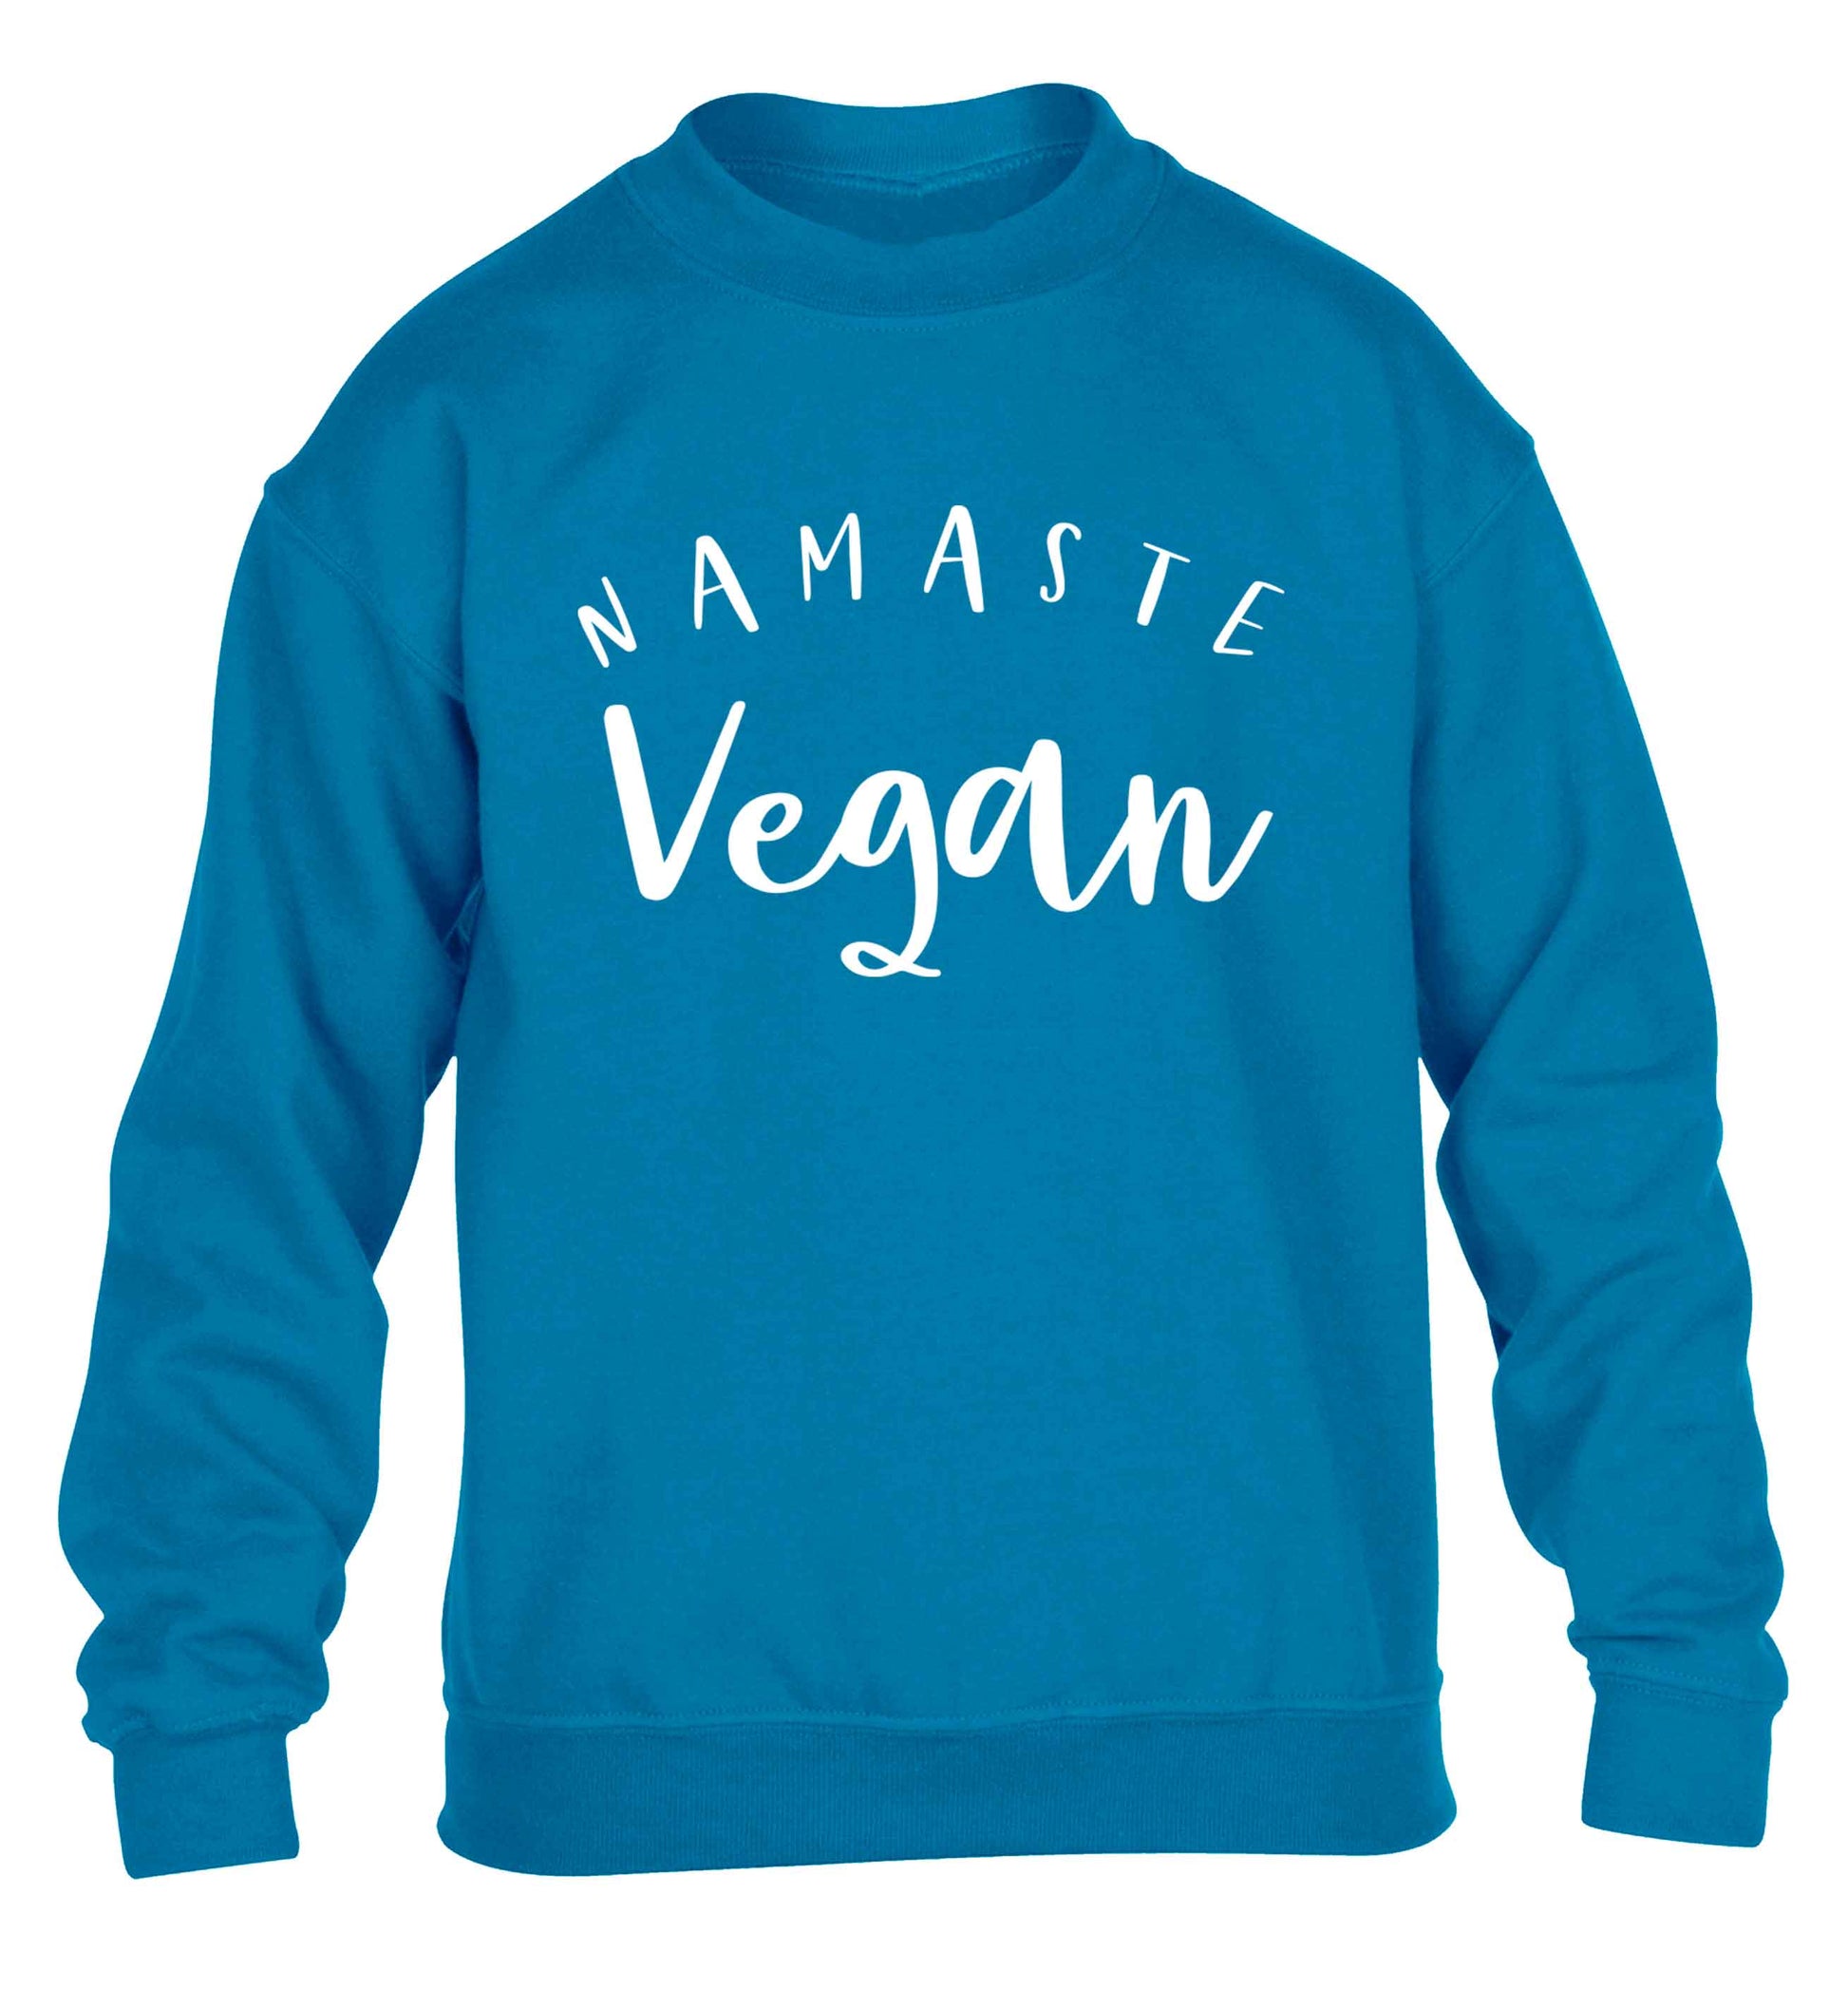 Namaste vegan children's blue sweater 12-13 Years